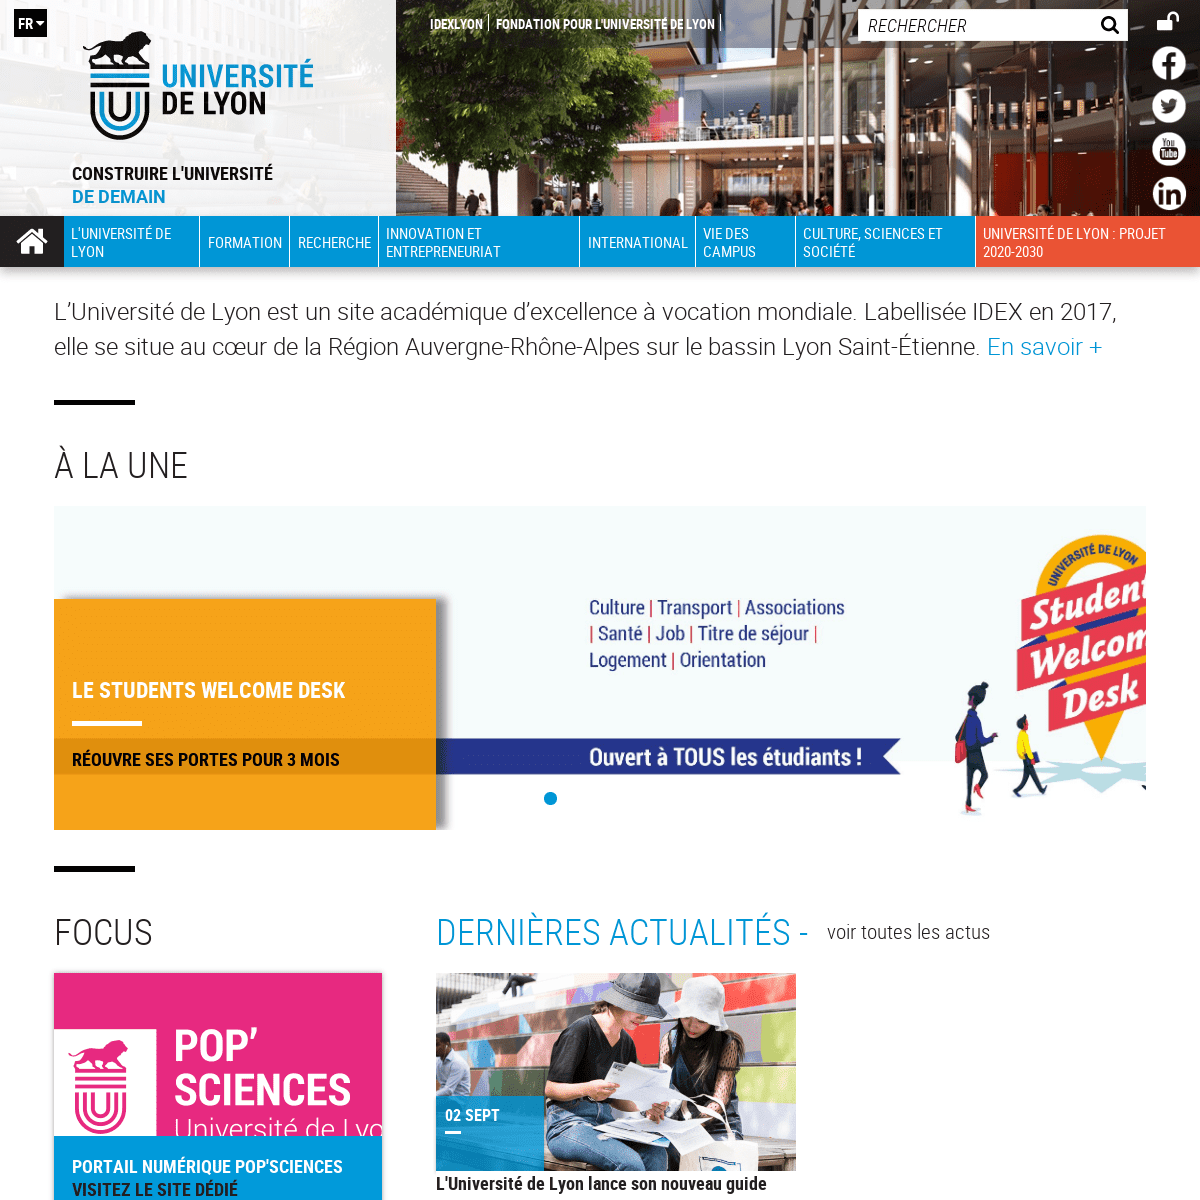 UDL - Université de Lyon - site académique d'excellence mondiale.